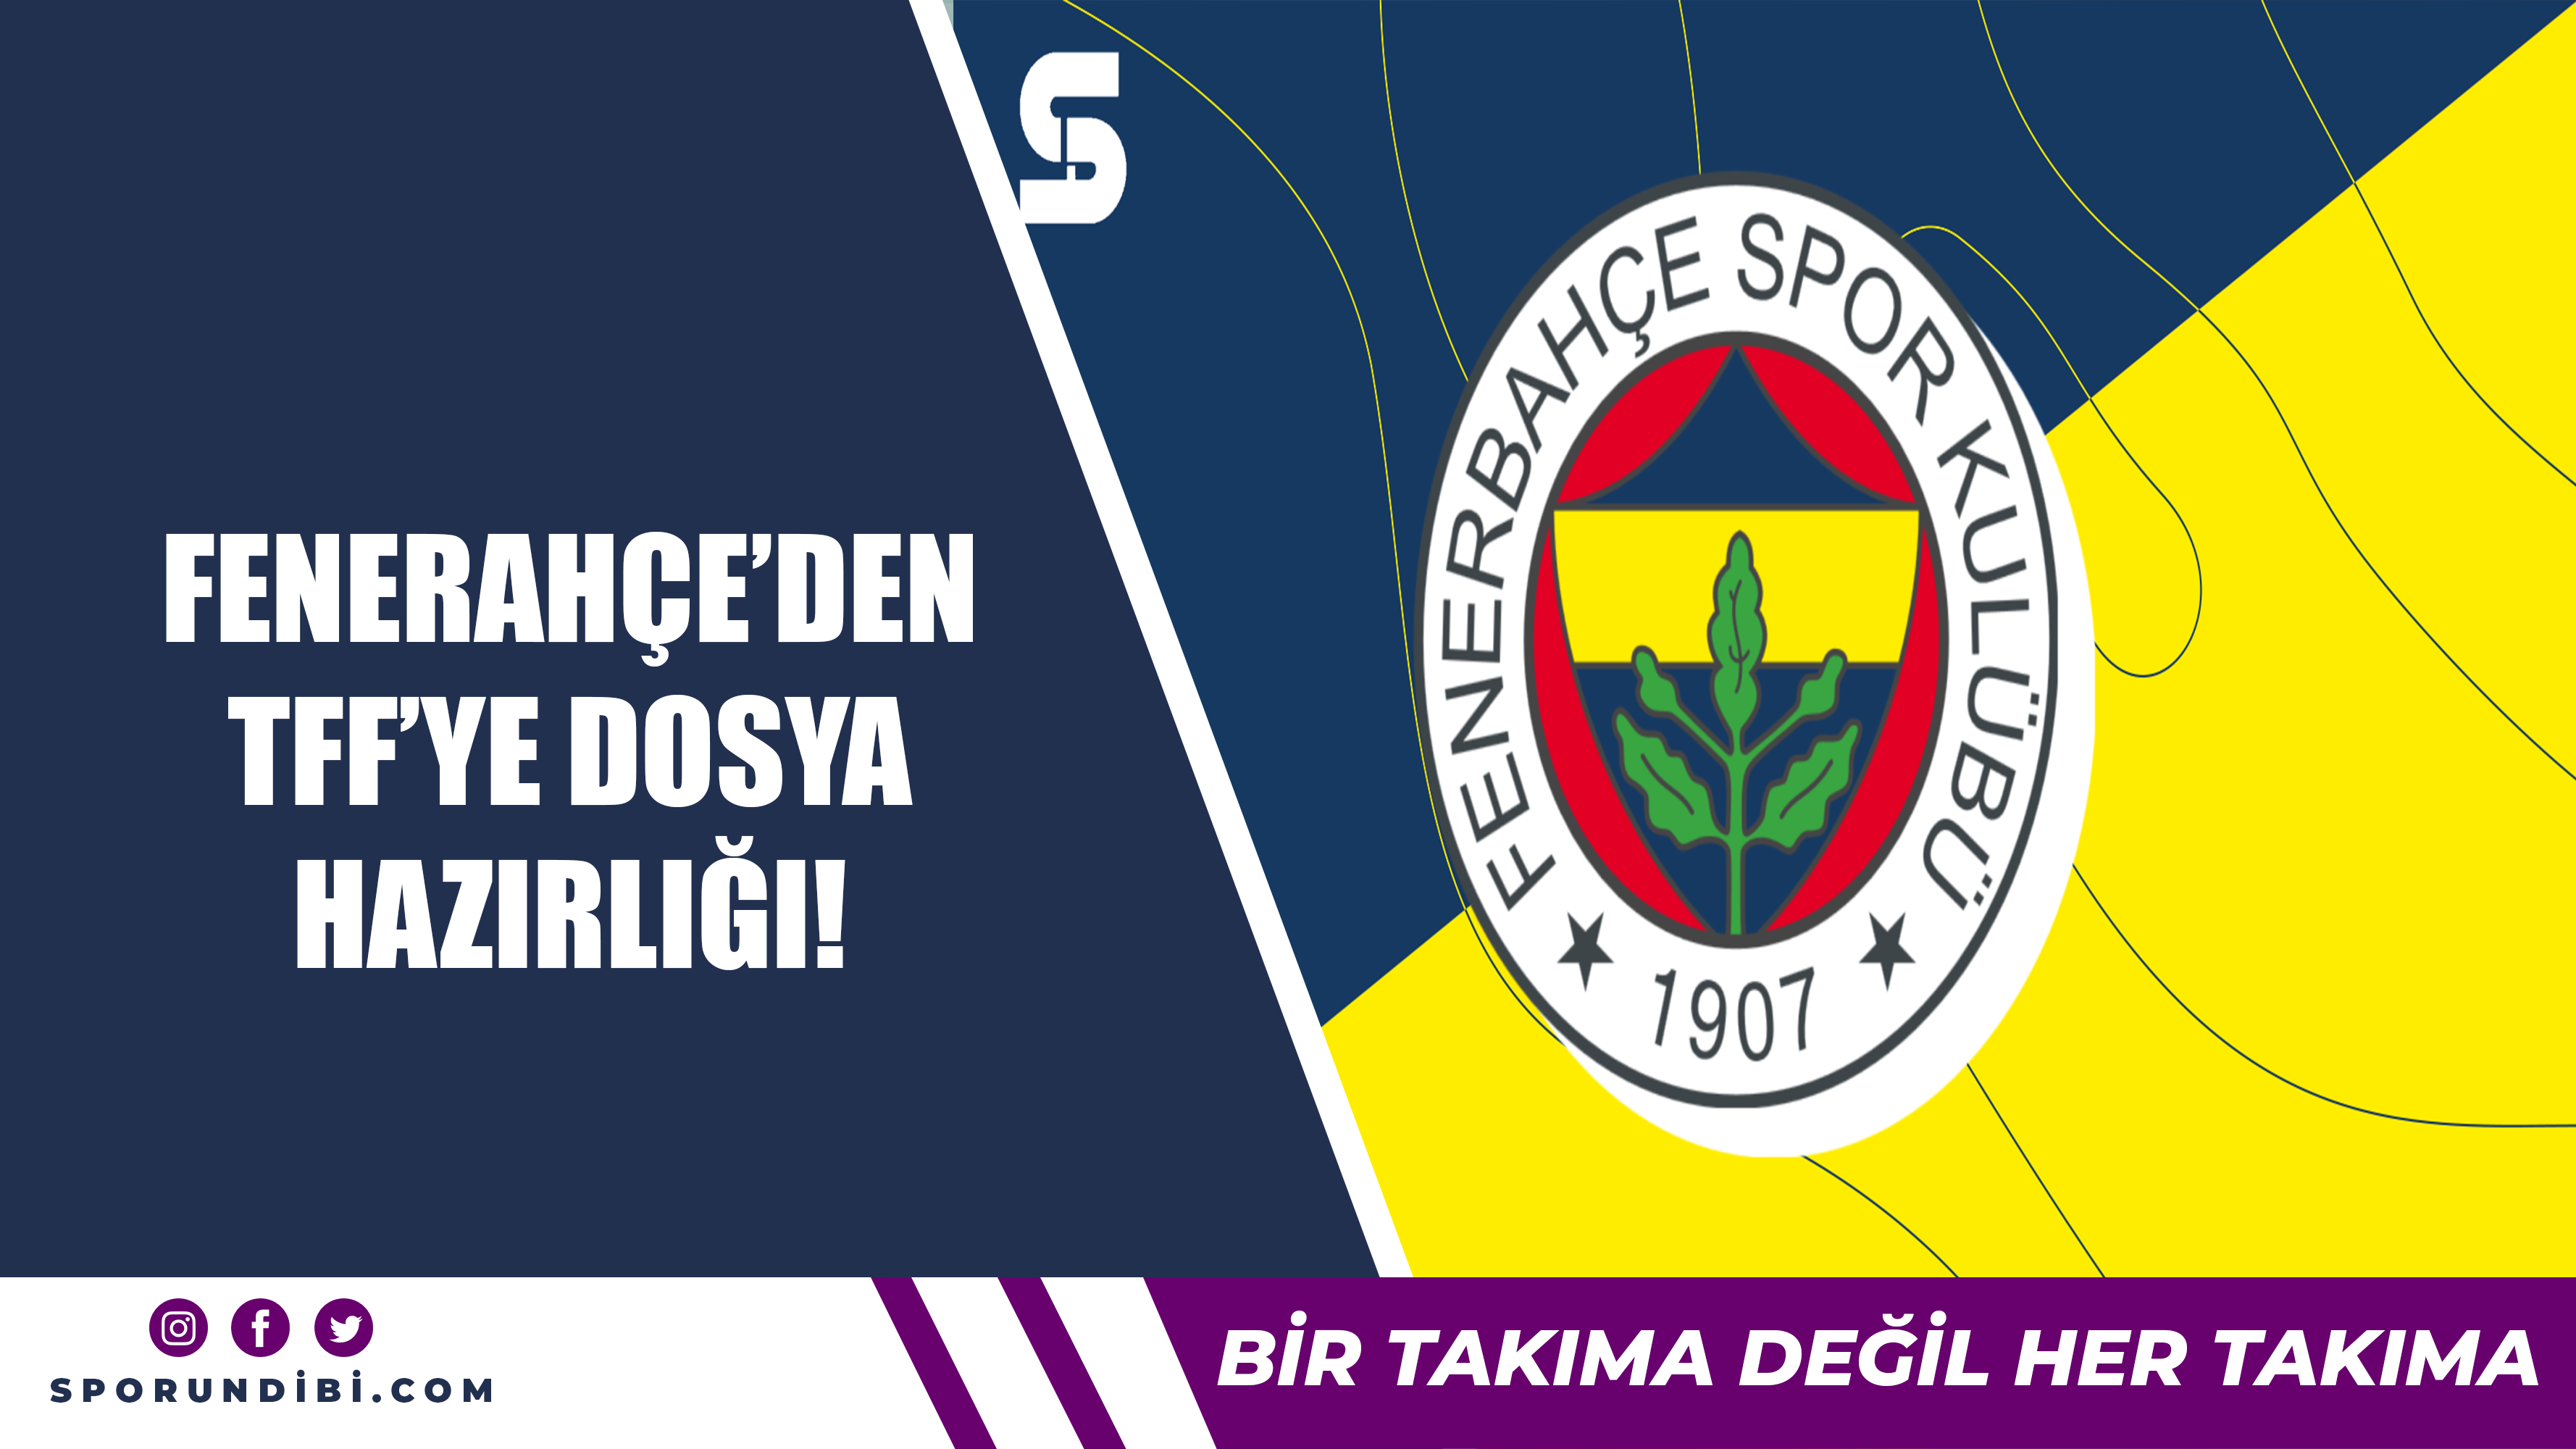 Fenerbahçe'den TFF'ye dosya hazırlığı!